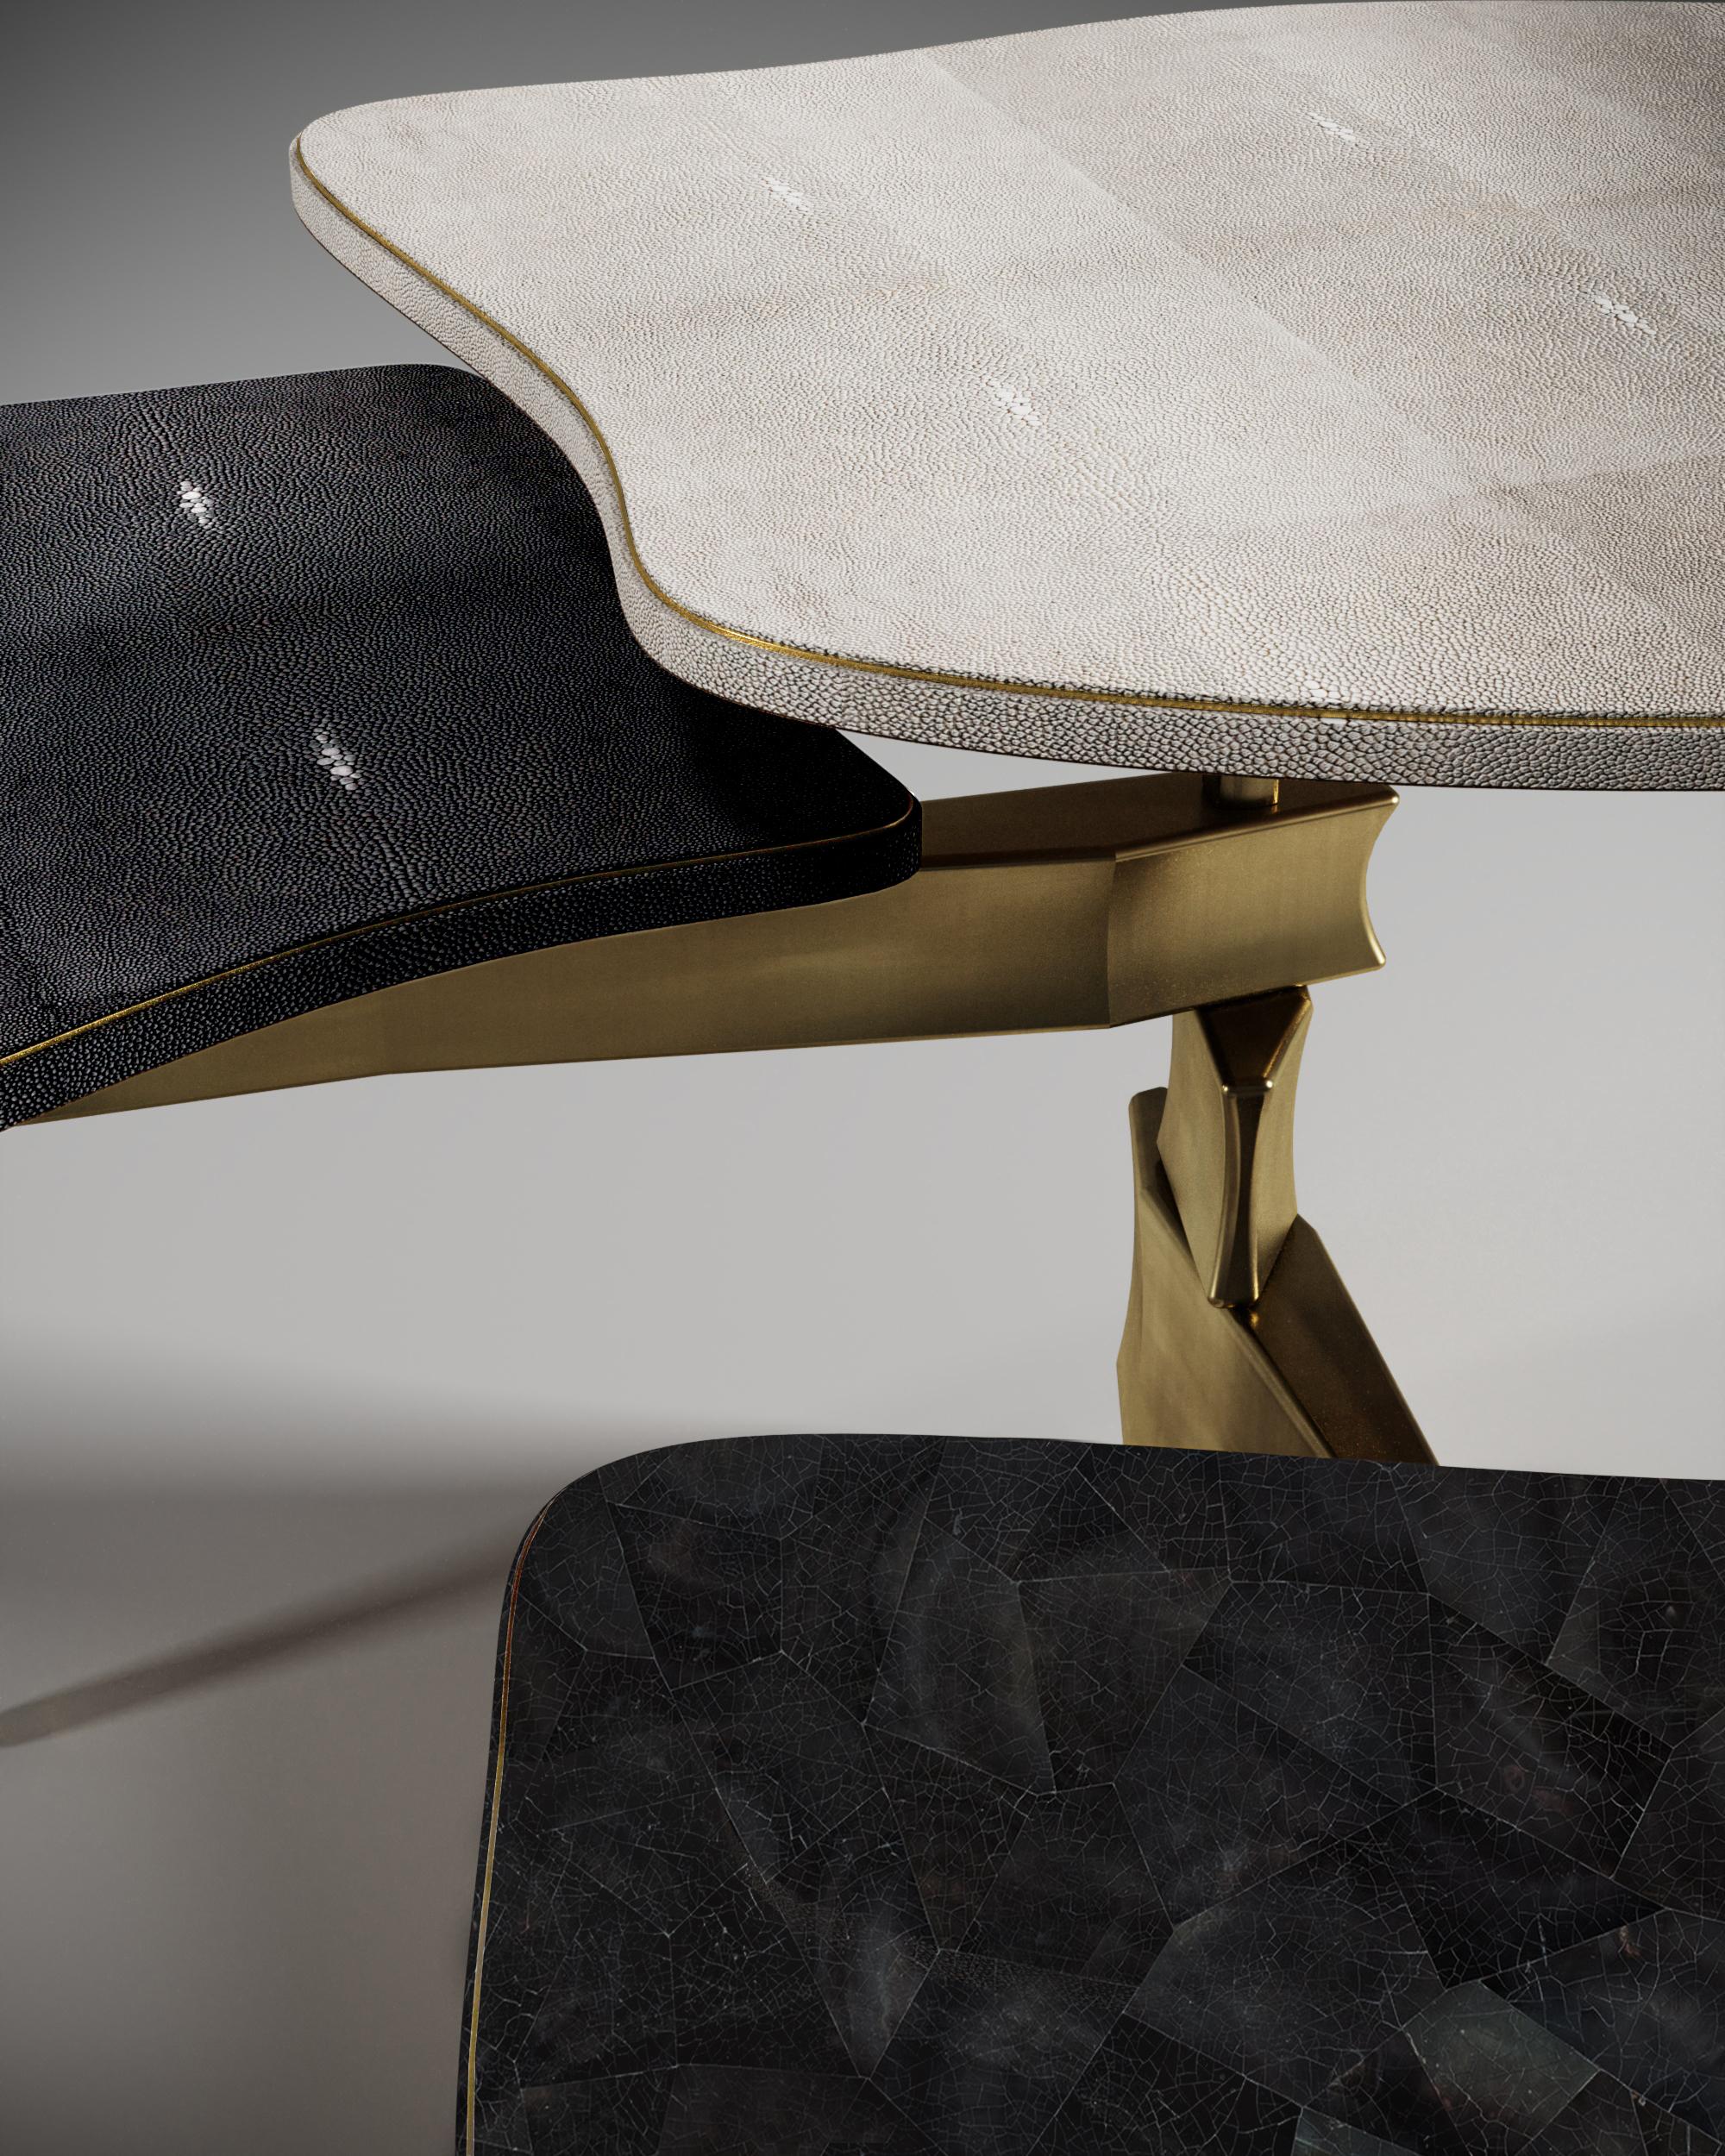 La table basse Metropolis à 3 plateaux de Kifu Paris est un design dramatique et sculptural qui démontre l'incroyable travail artisanal et la signature de ses gènes Augousti. La base en laiton bronze-patiné de la table basse s'inspire